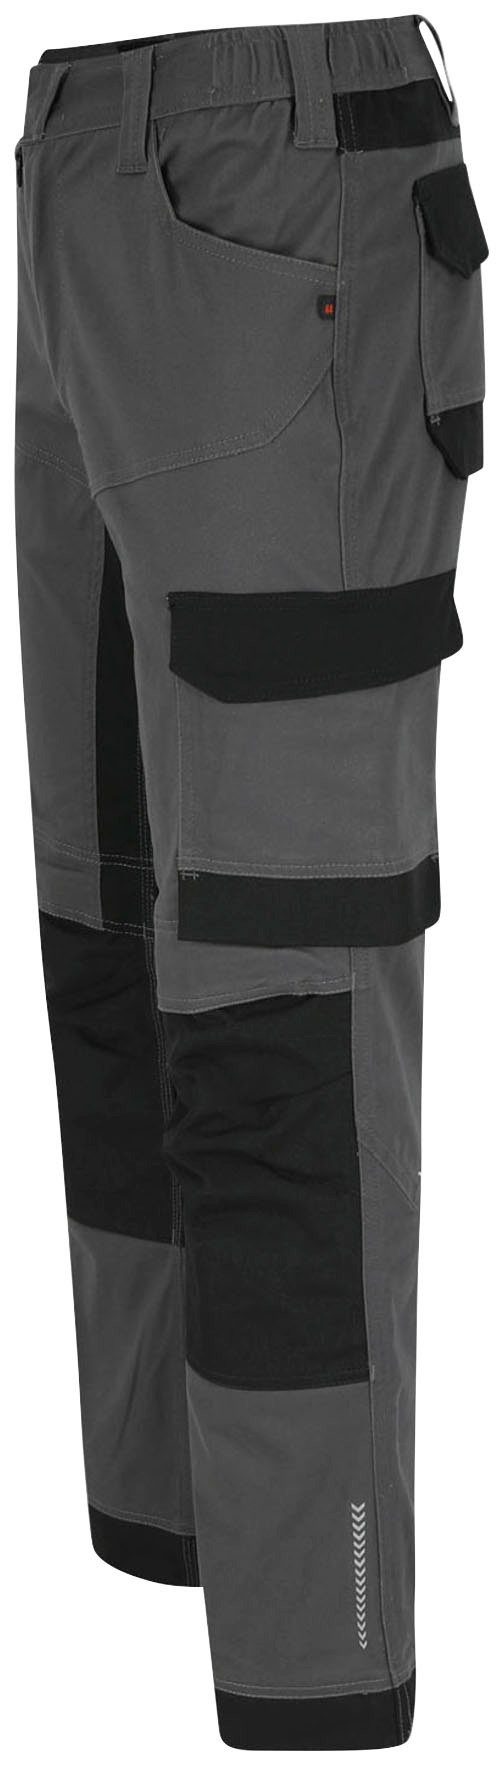 Herock Arbeitshose XENI Baumwolle, Multi-pocket, wasserabweisend, weich bequem und grau Stretch